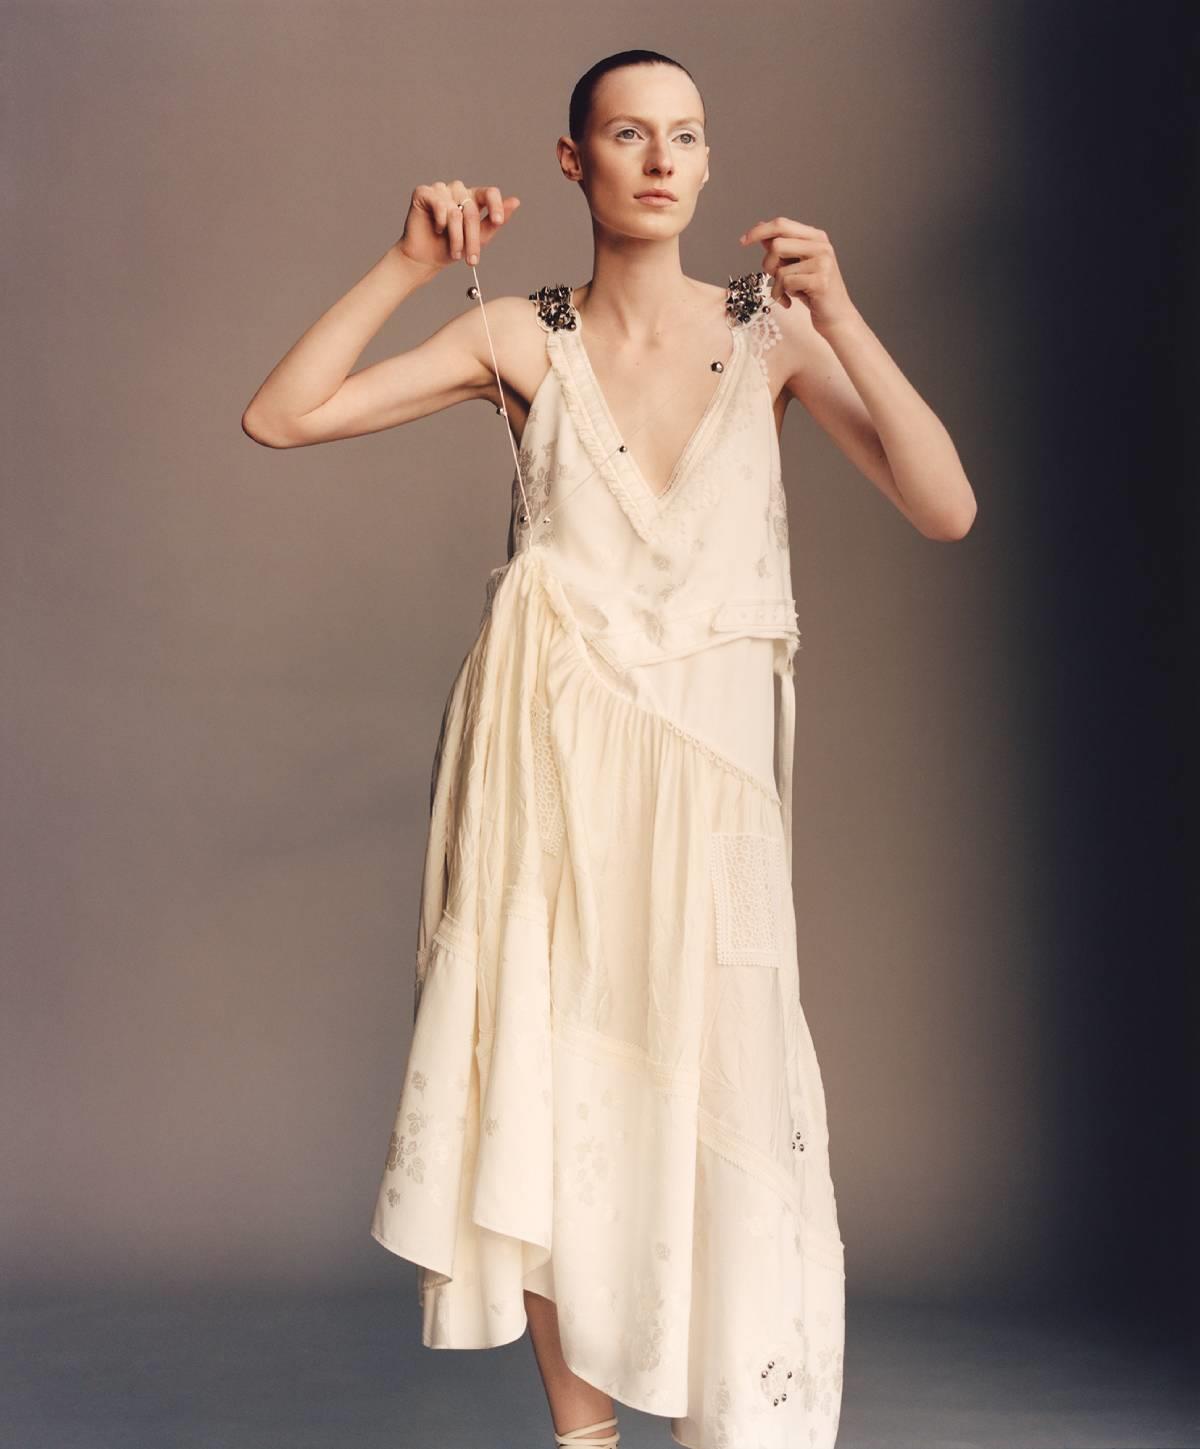 Vestido blanco roto con bordados y tachuelas, Zara Atelier